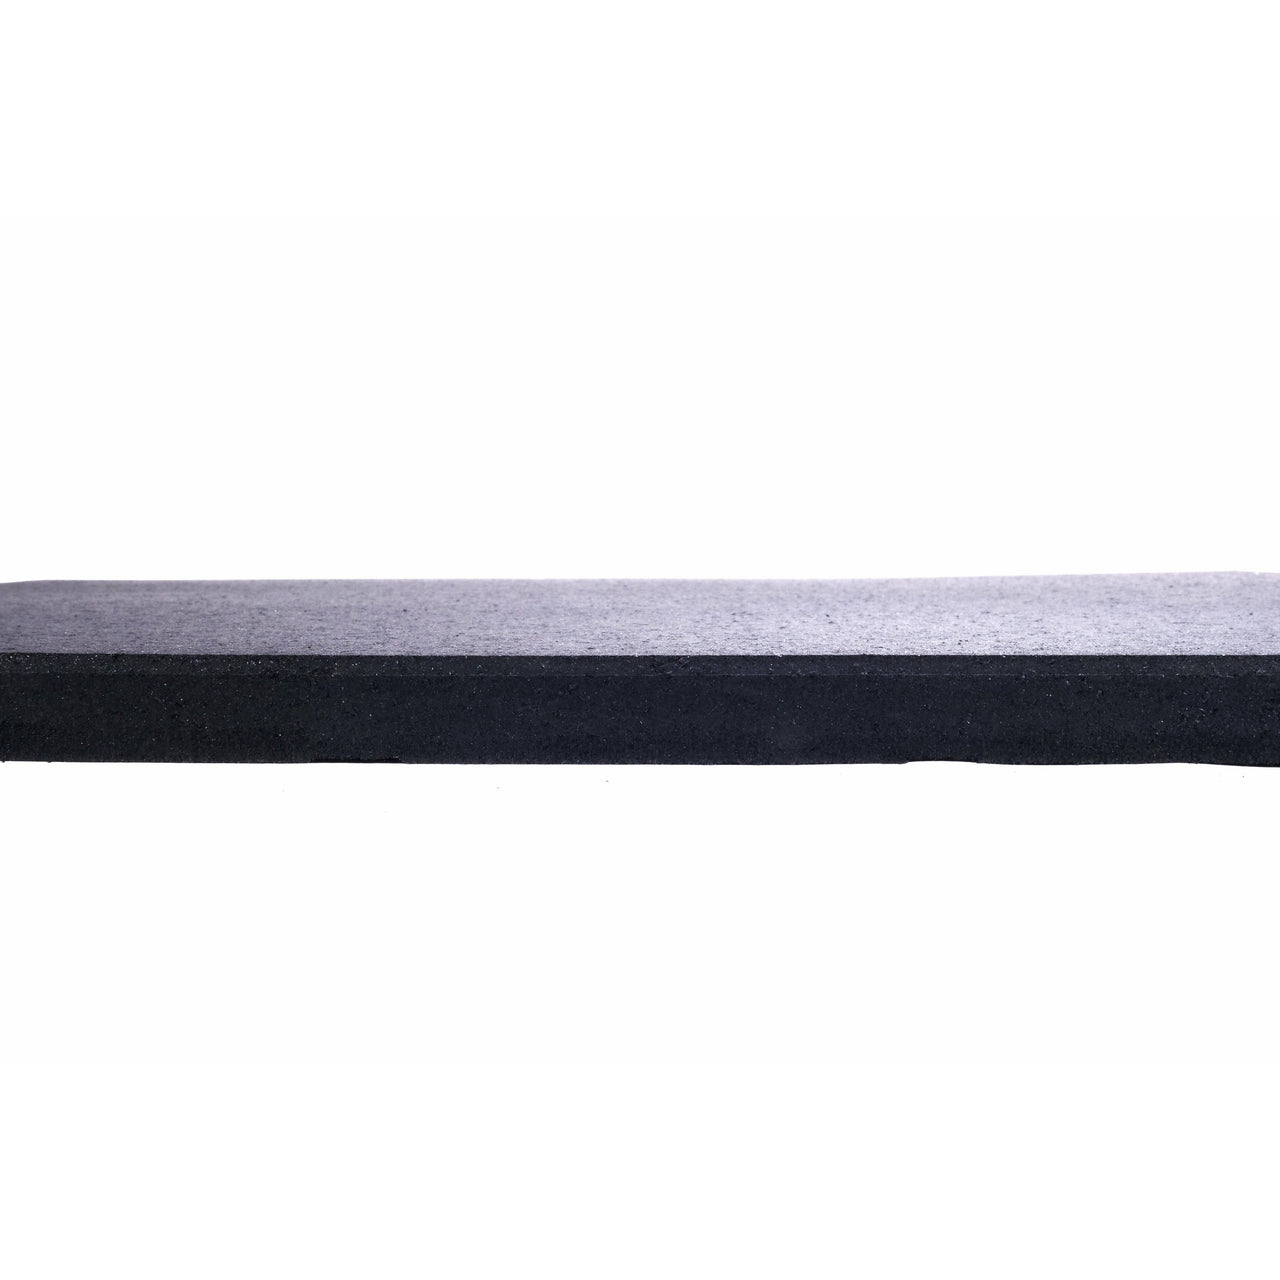 20mm Sprung Rubber Heavy Duty Gym Flooring - GymFloors